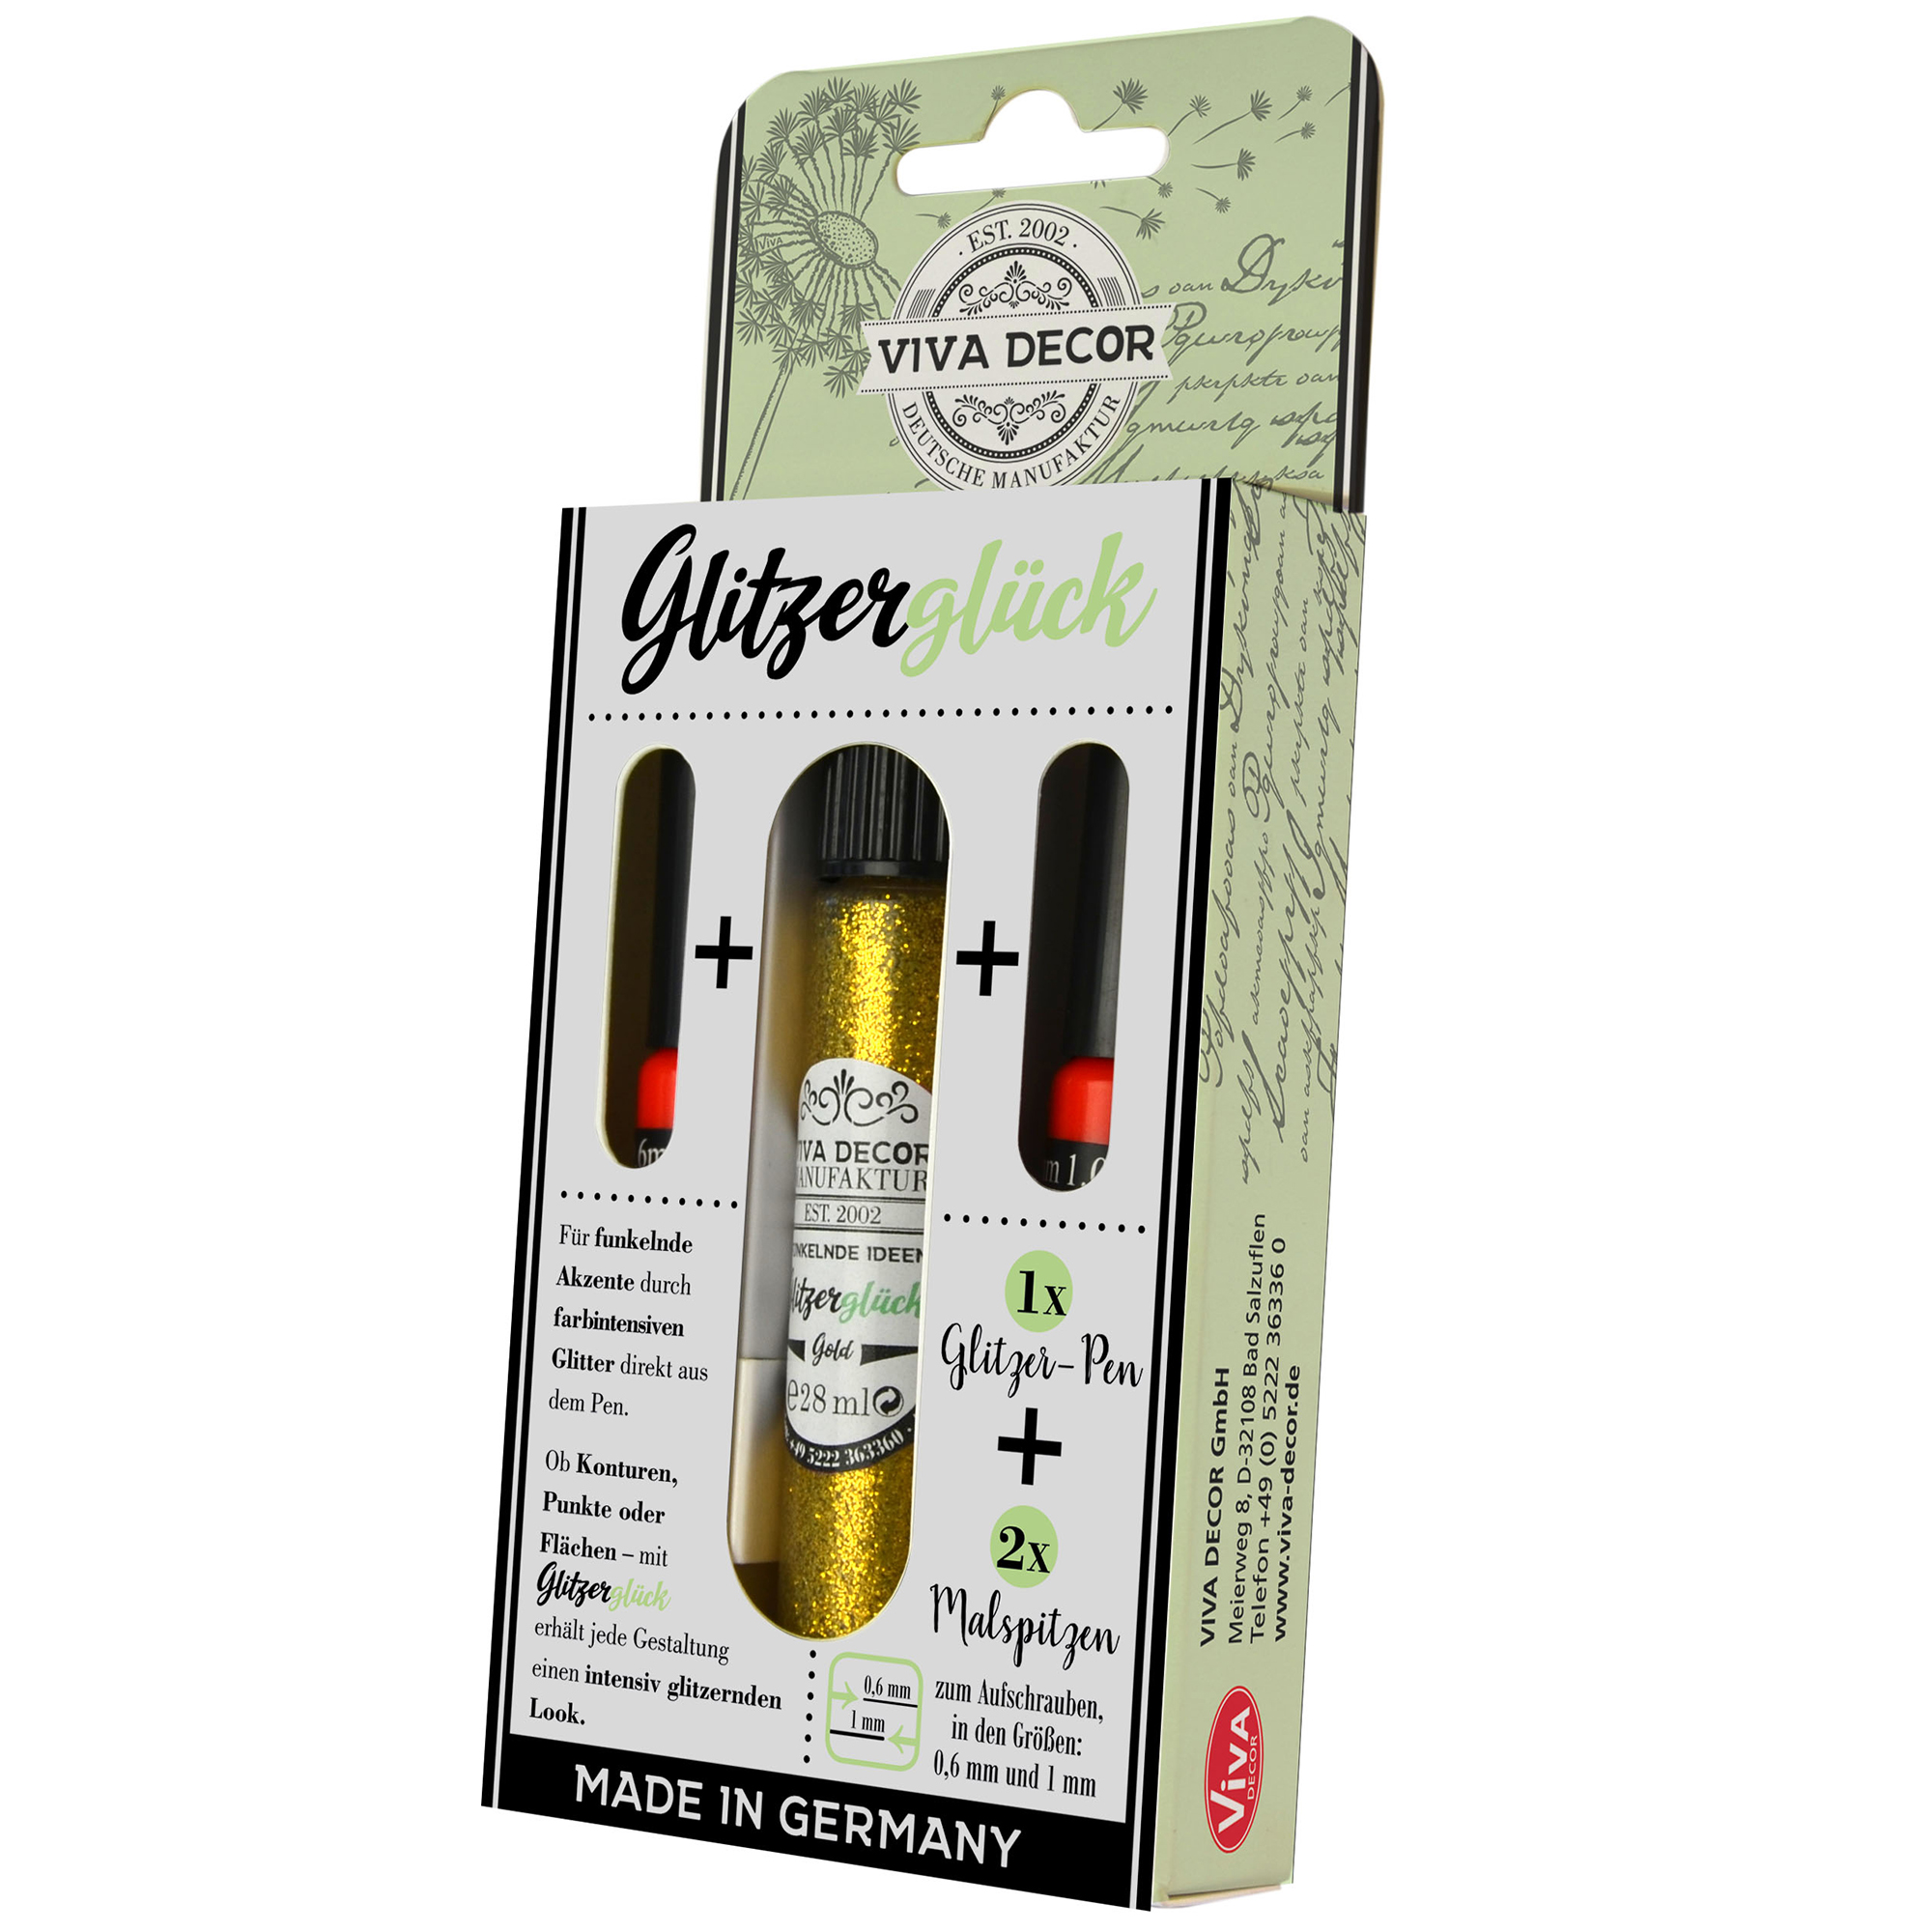 Glitzerglück Glitter-Pen gold 28ml mit Malspitzen (0,6mm, 1mm) Viva Decor